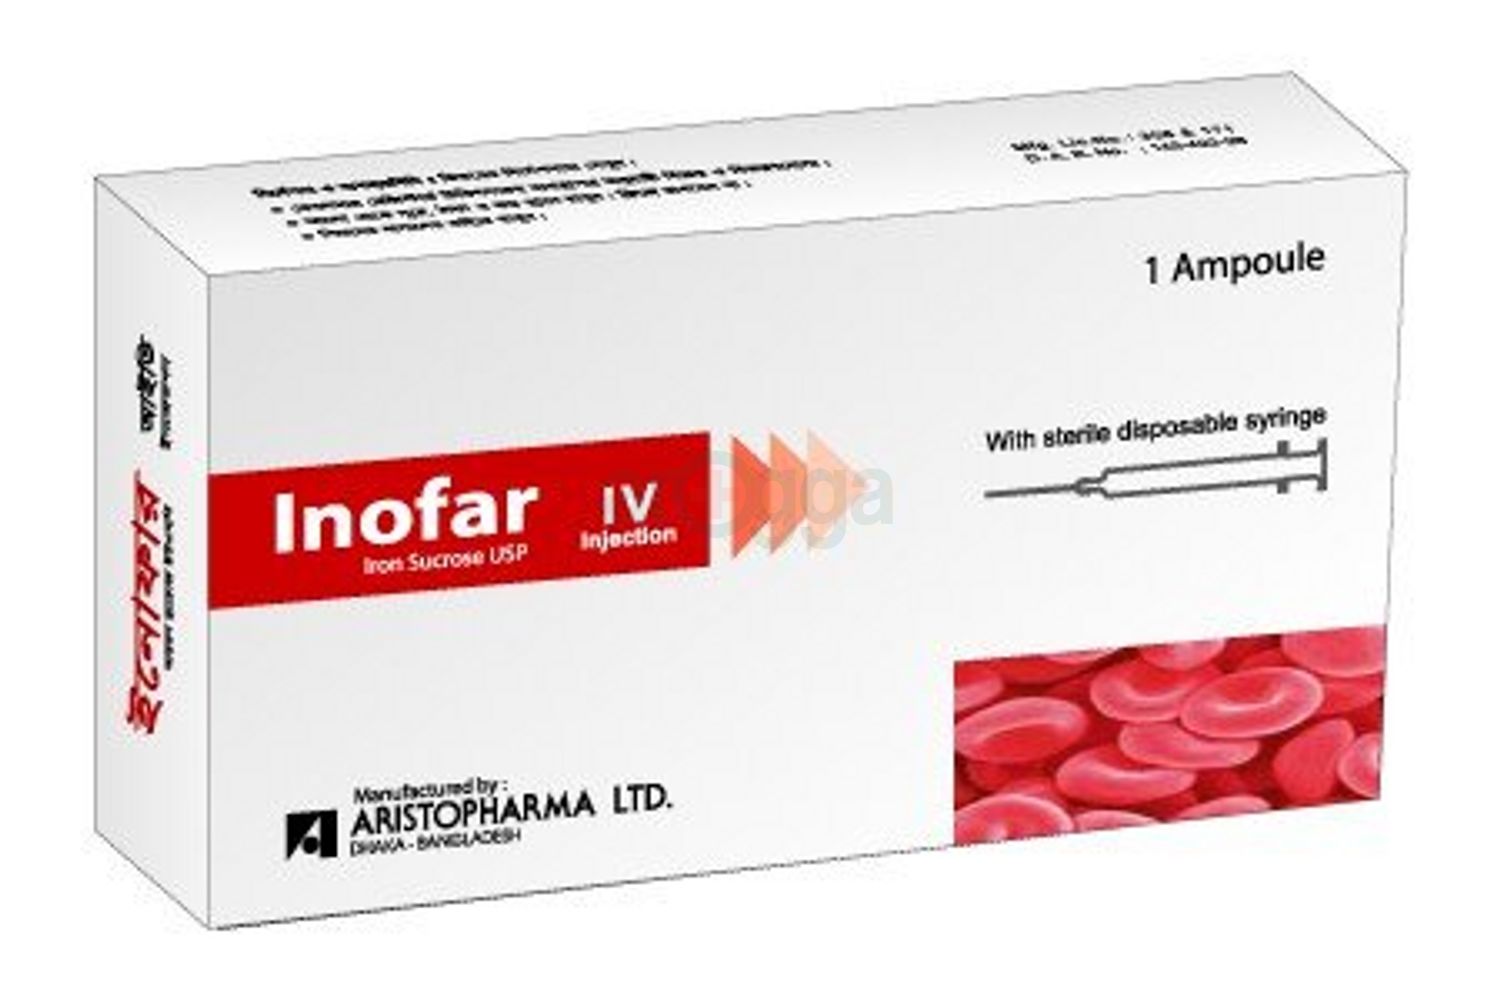 Inofar IV